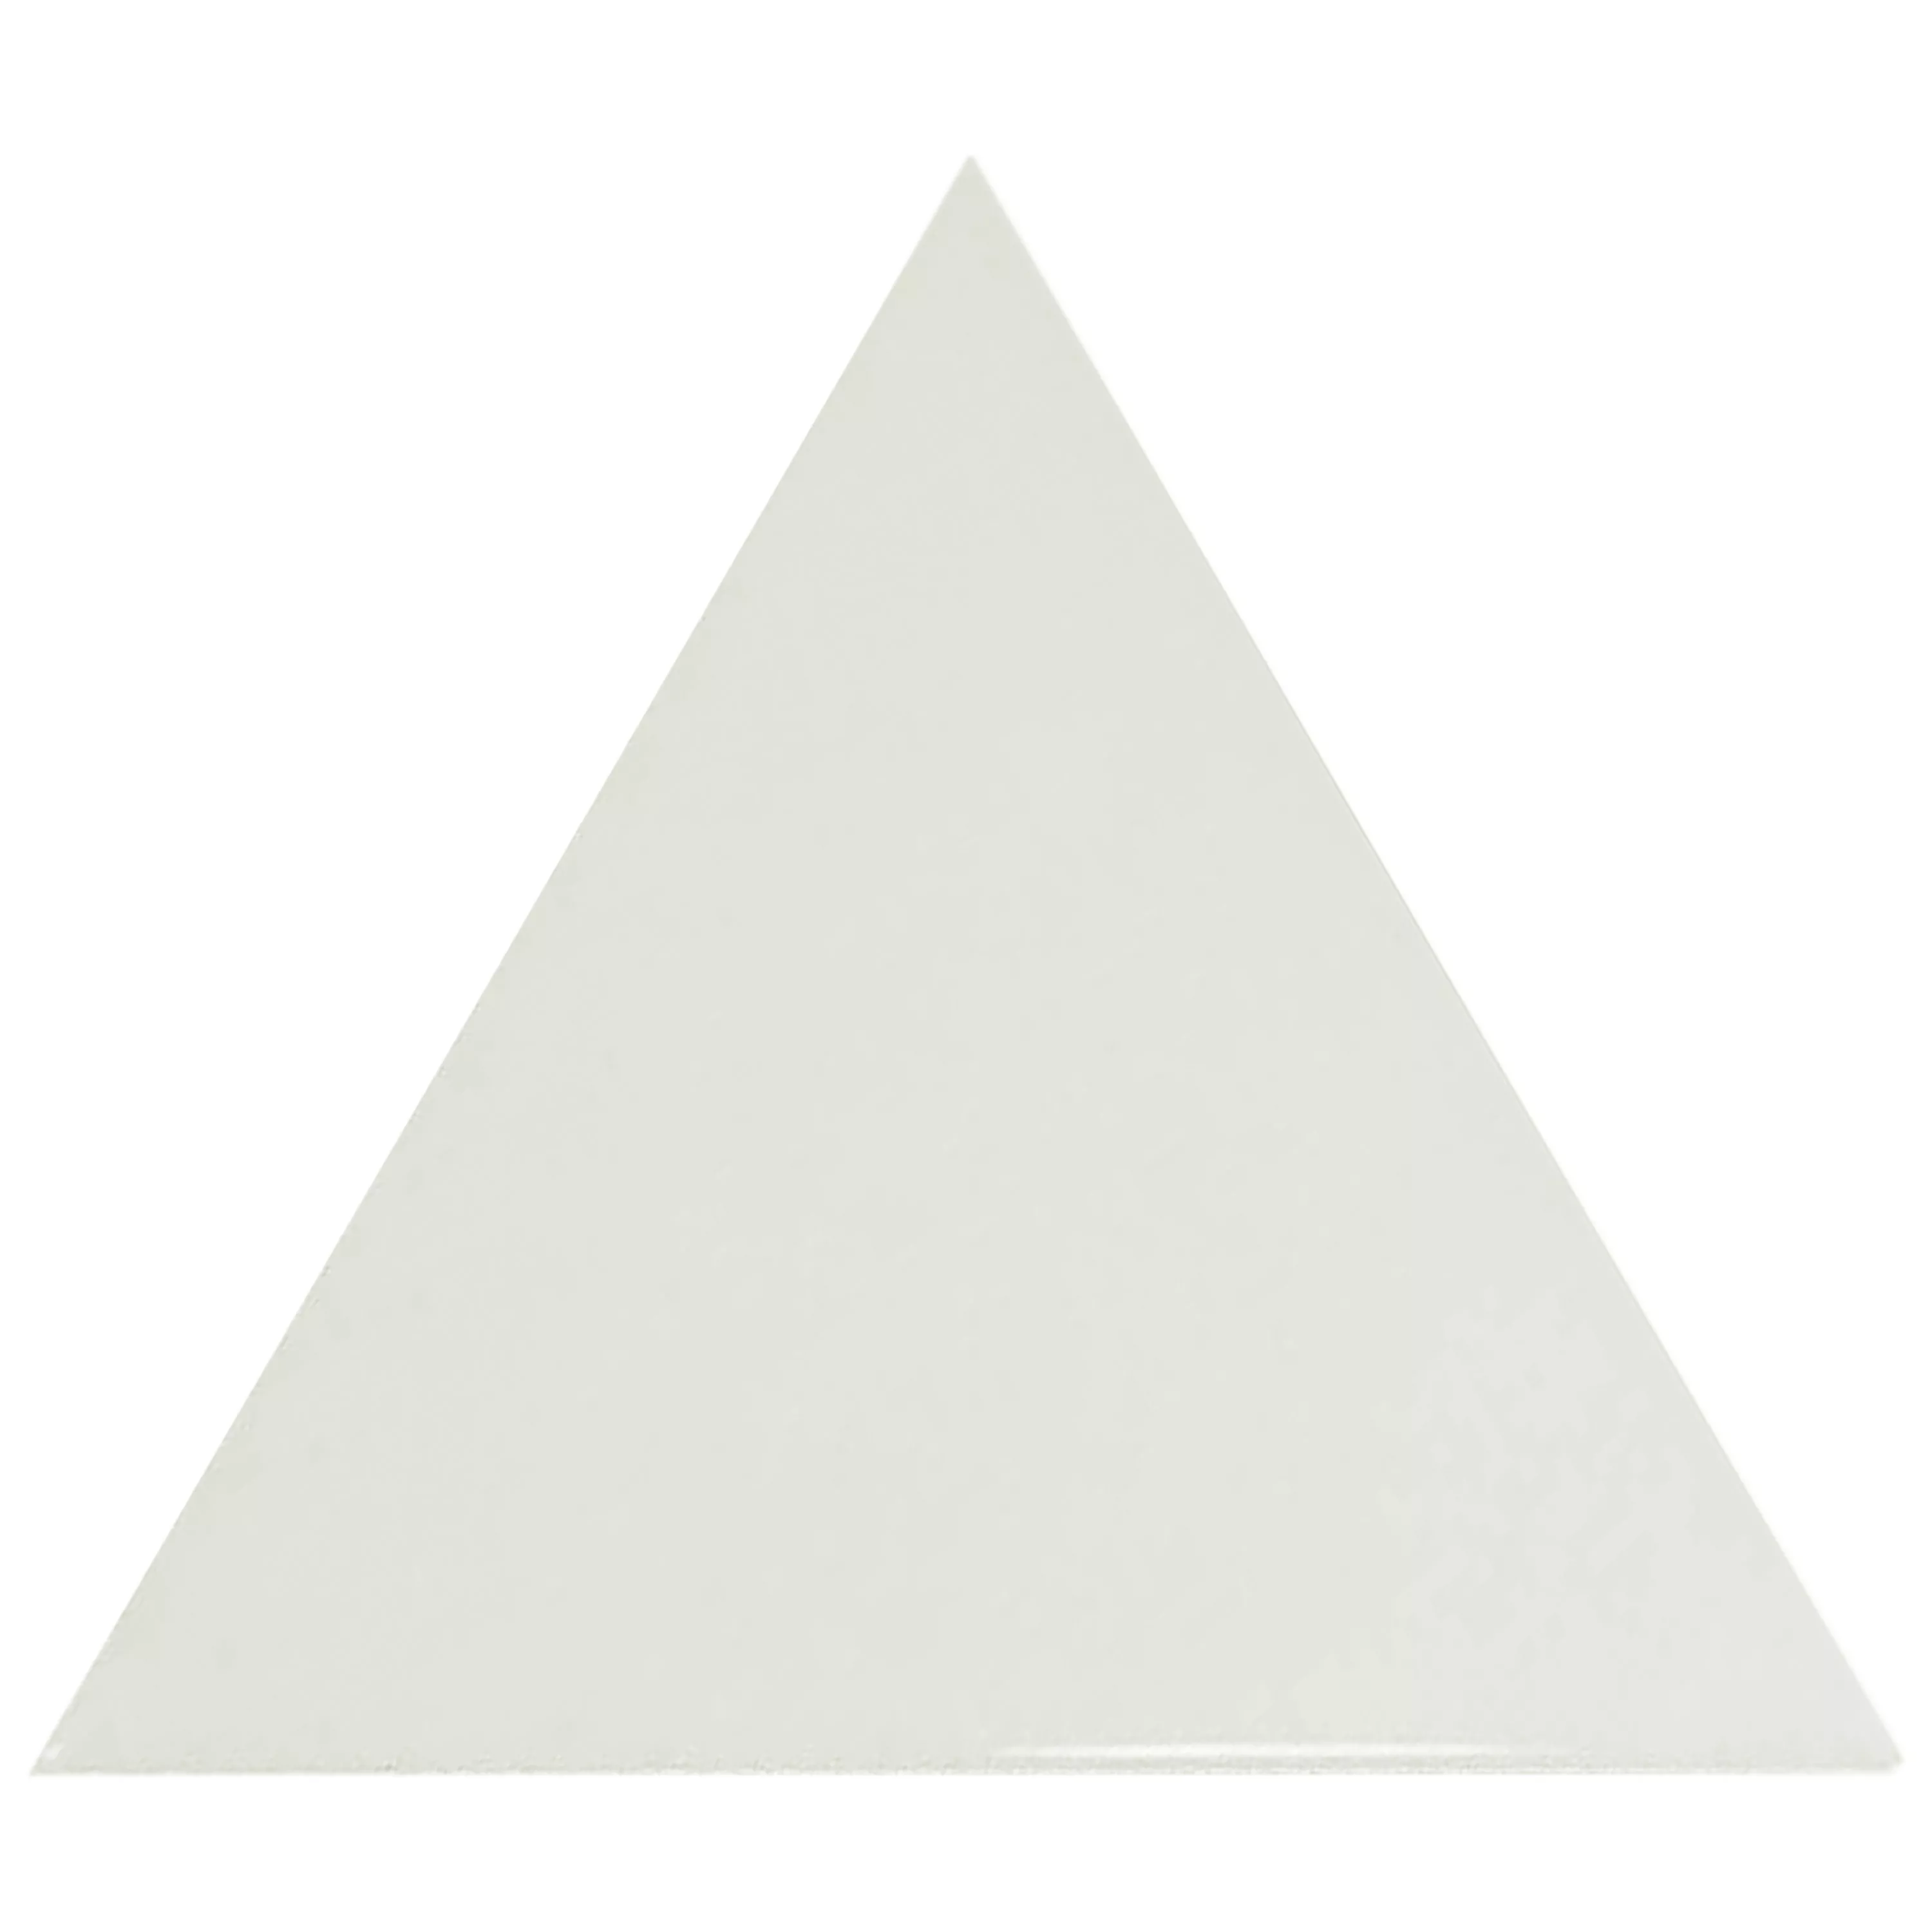 Sample Wall Tiles Britannia Triangle 10,8x12,4cm Mint